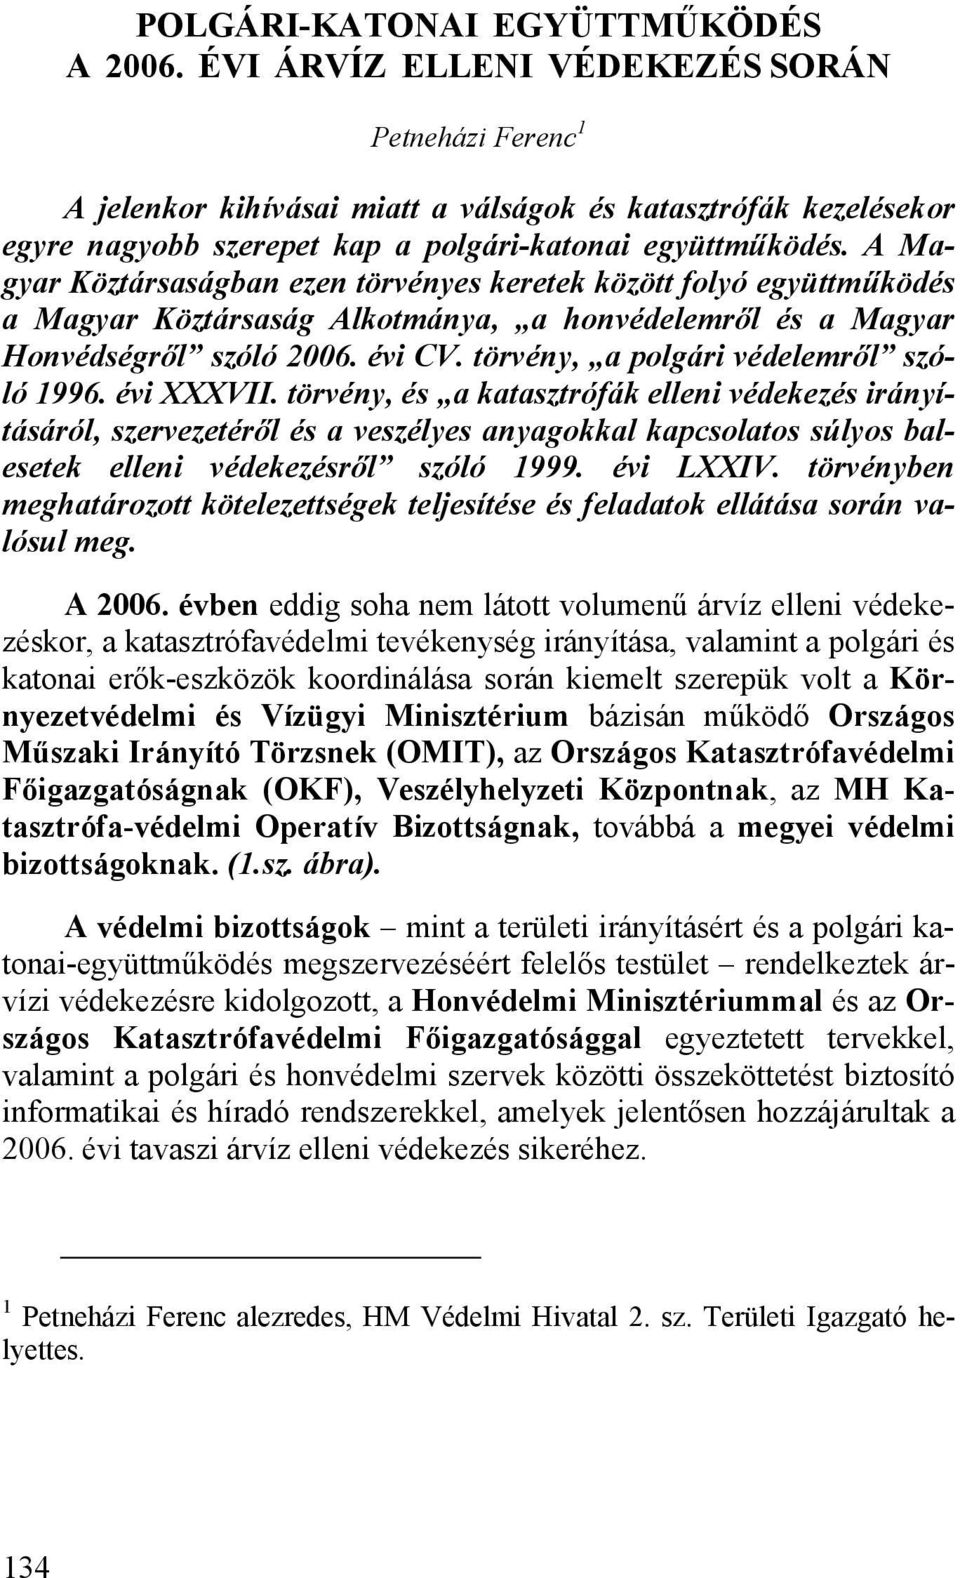 A Magyar Köztársaságban ezen törvényes keretek között folyó együttműködés a Magyar Köztársaság Alkotmánya, a honvédelemről és a Magyar Honvédségről szóló 2006. évi CV.